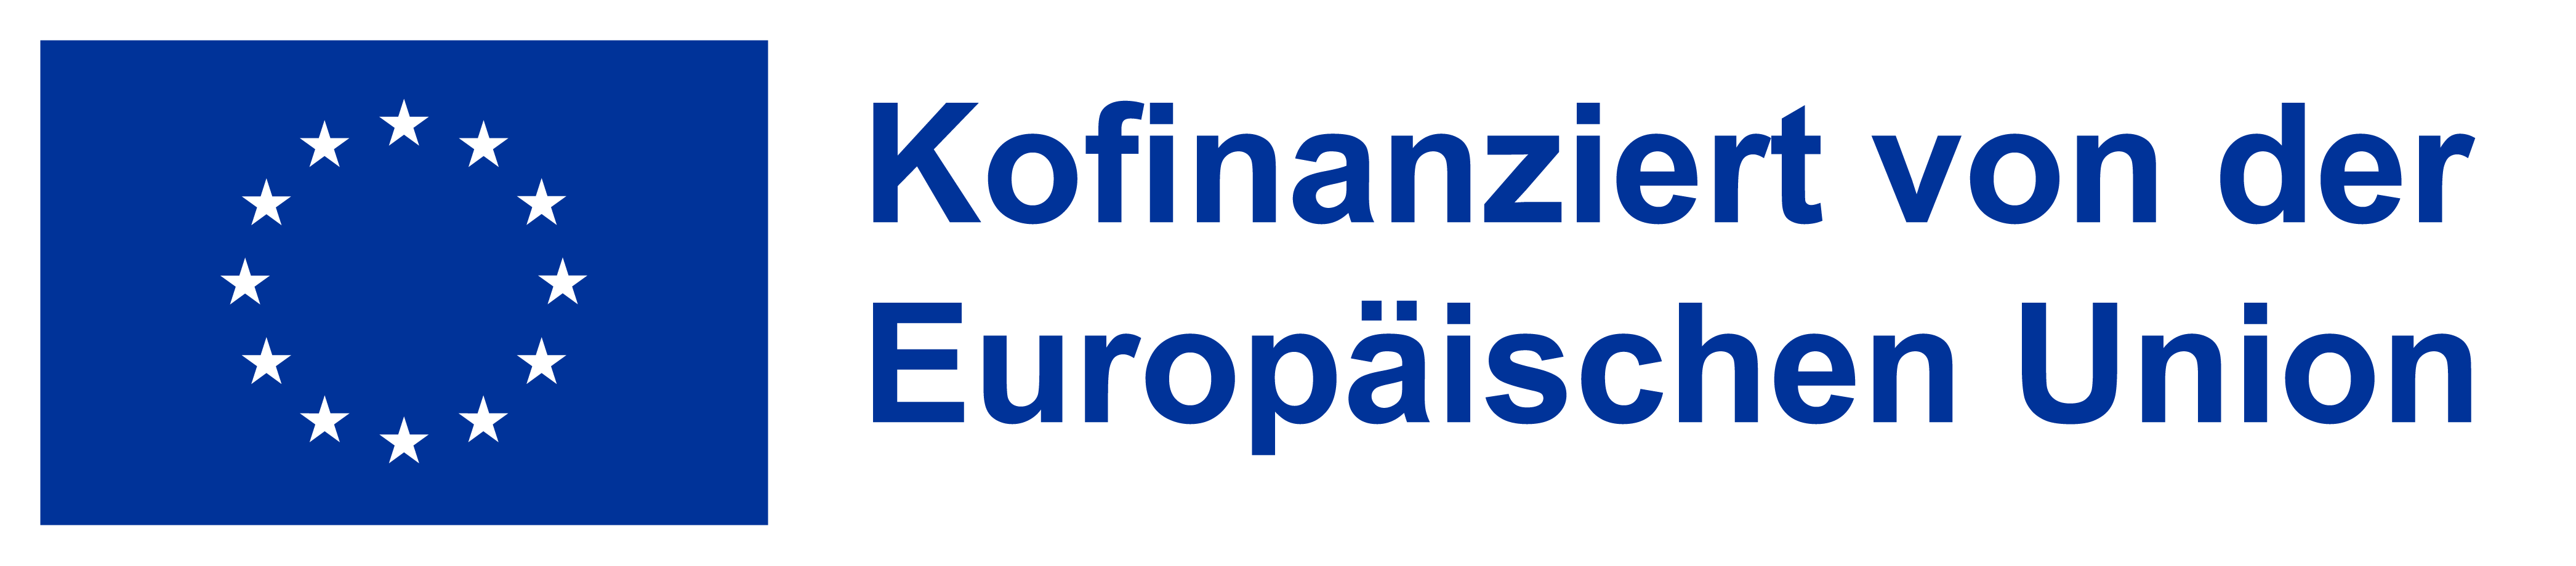 EU-Logo für die neue Förderperiode 2021-2027, horizontal angeordnet mit EU-Flagge mit weißen Sternen und Schriftzug in blau 'Kofinanziert von der Europäischen Union' (RGB, PNG)